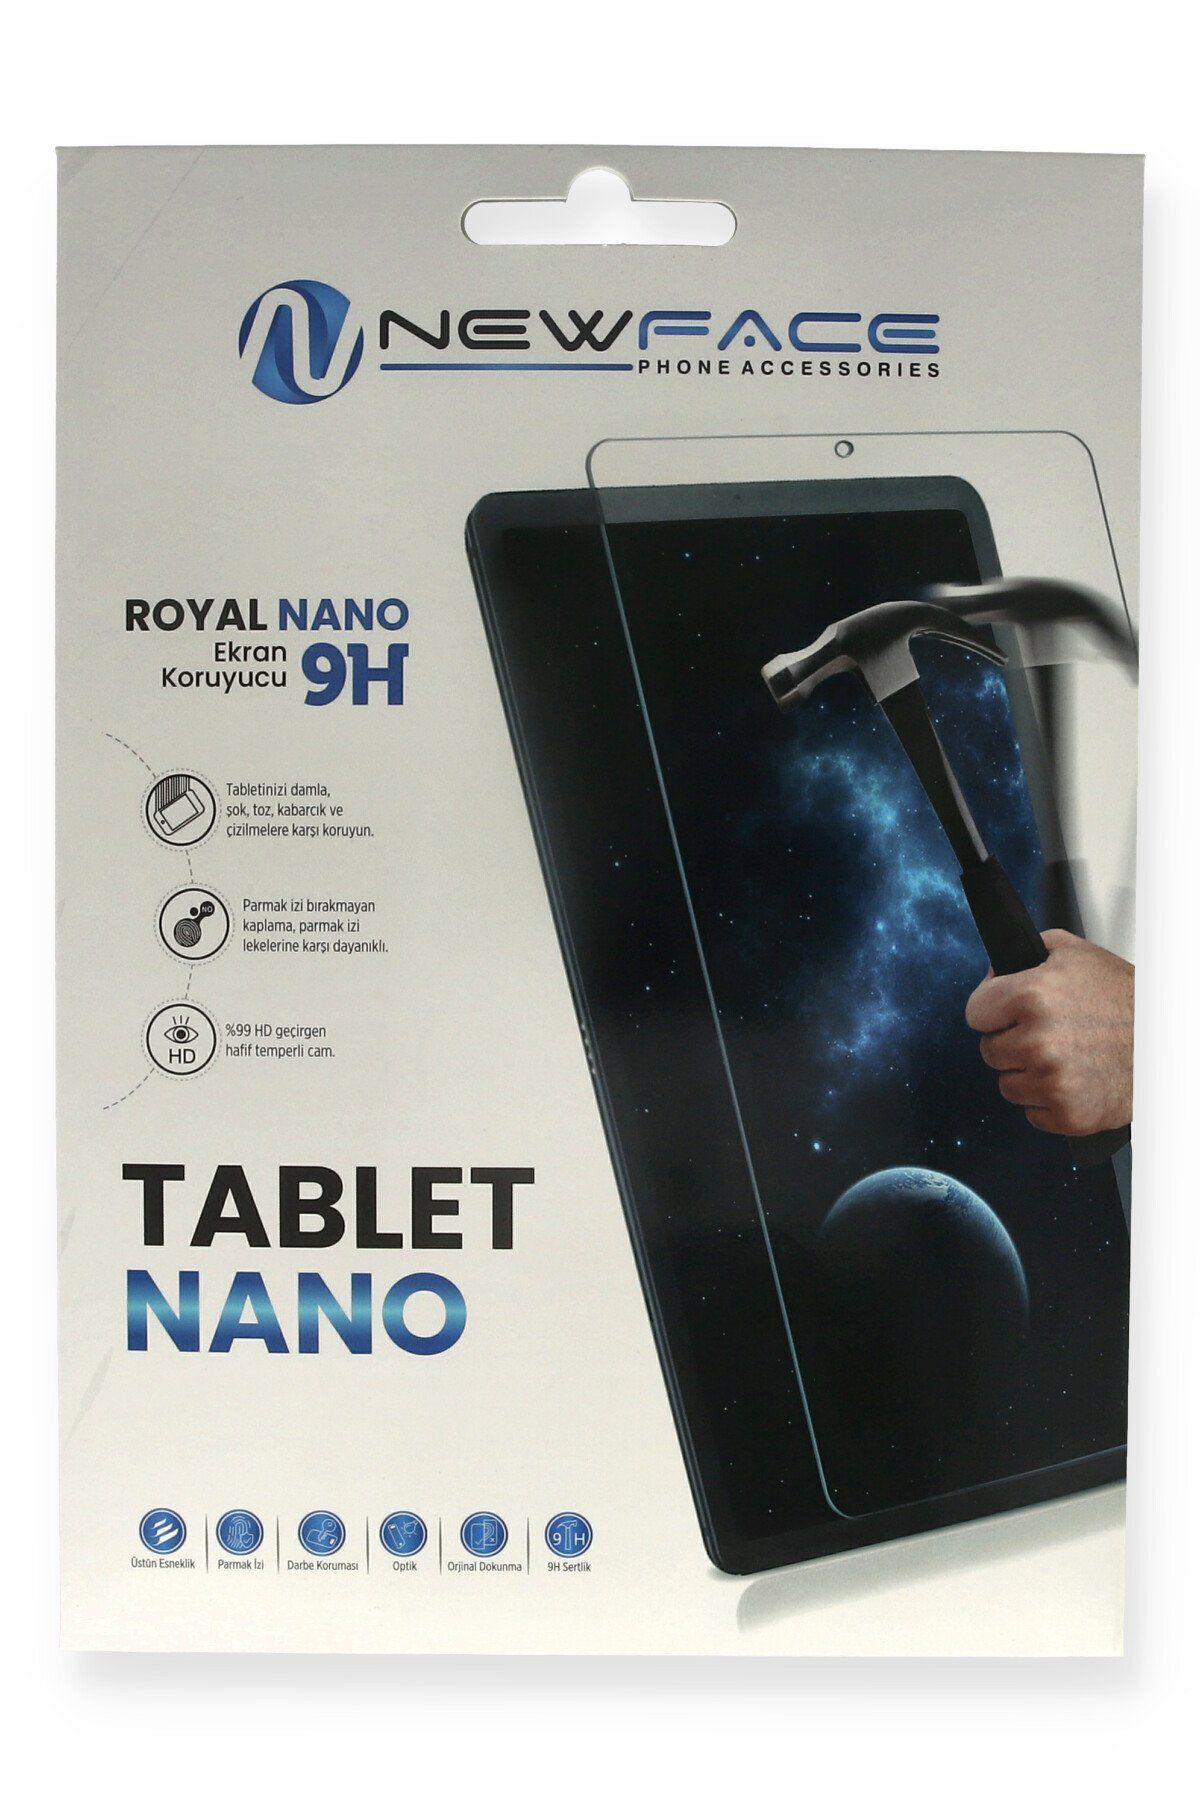 NewFace iPad Mini 2 Uyumlu Tablet Royal Nano 374113